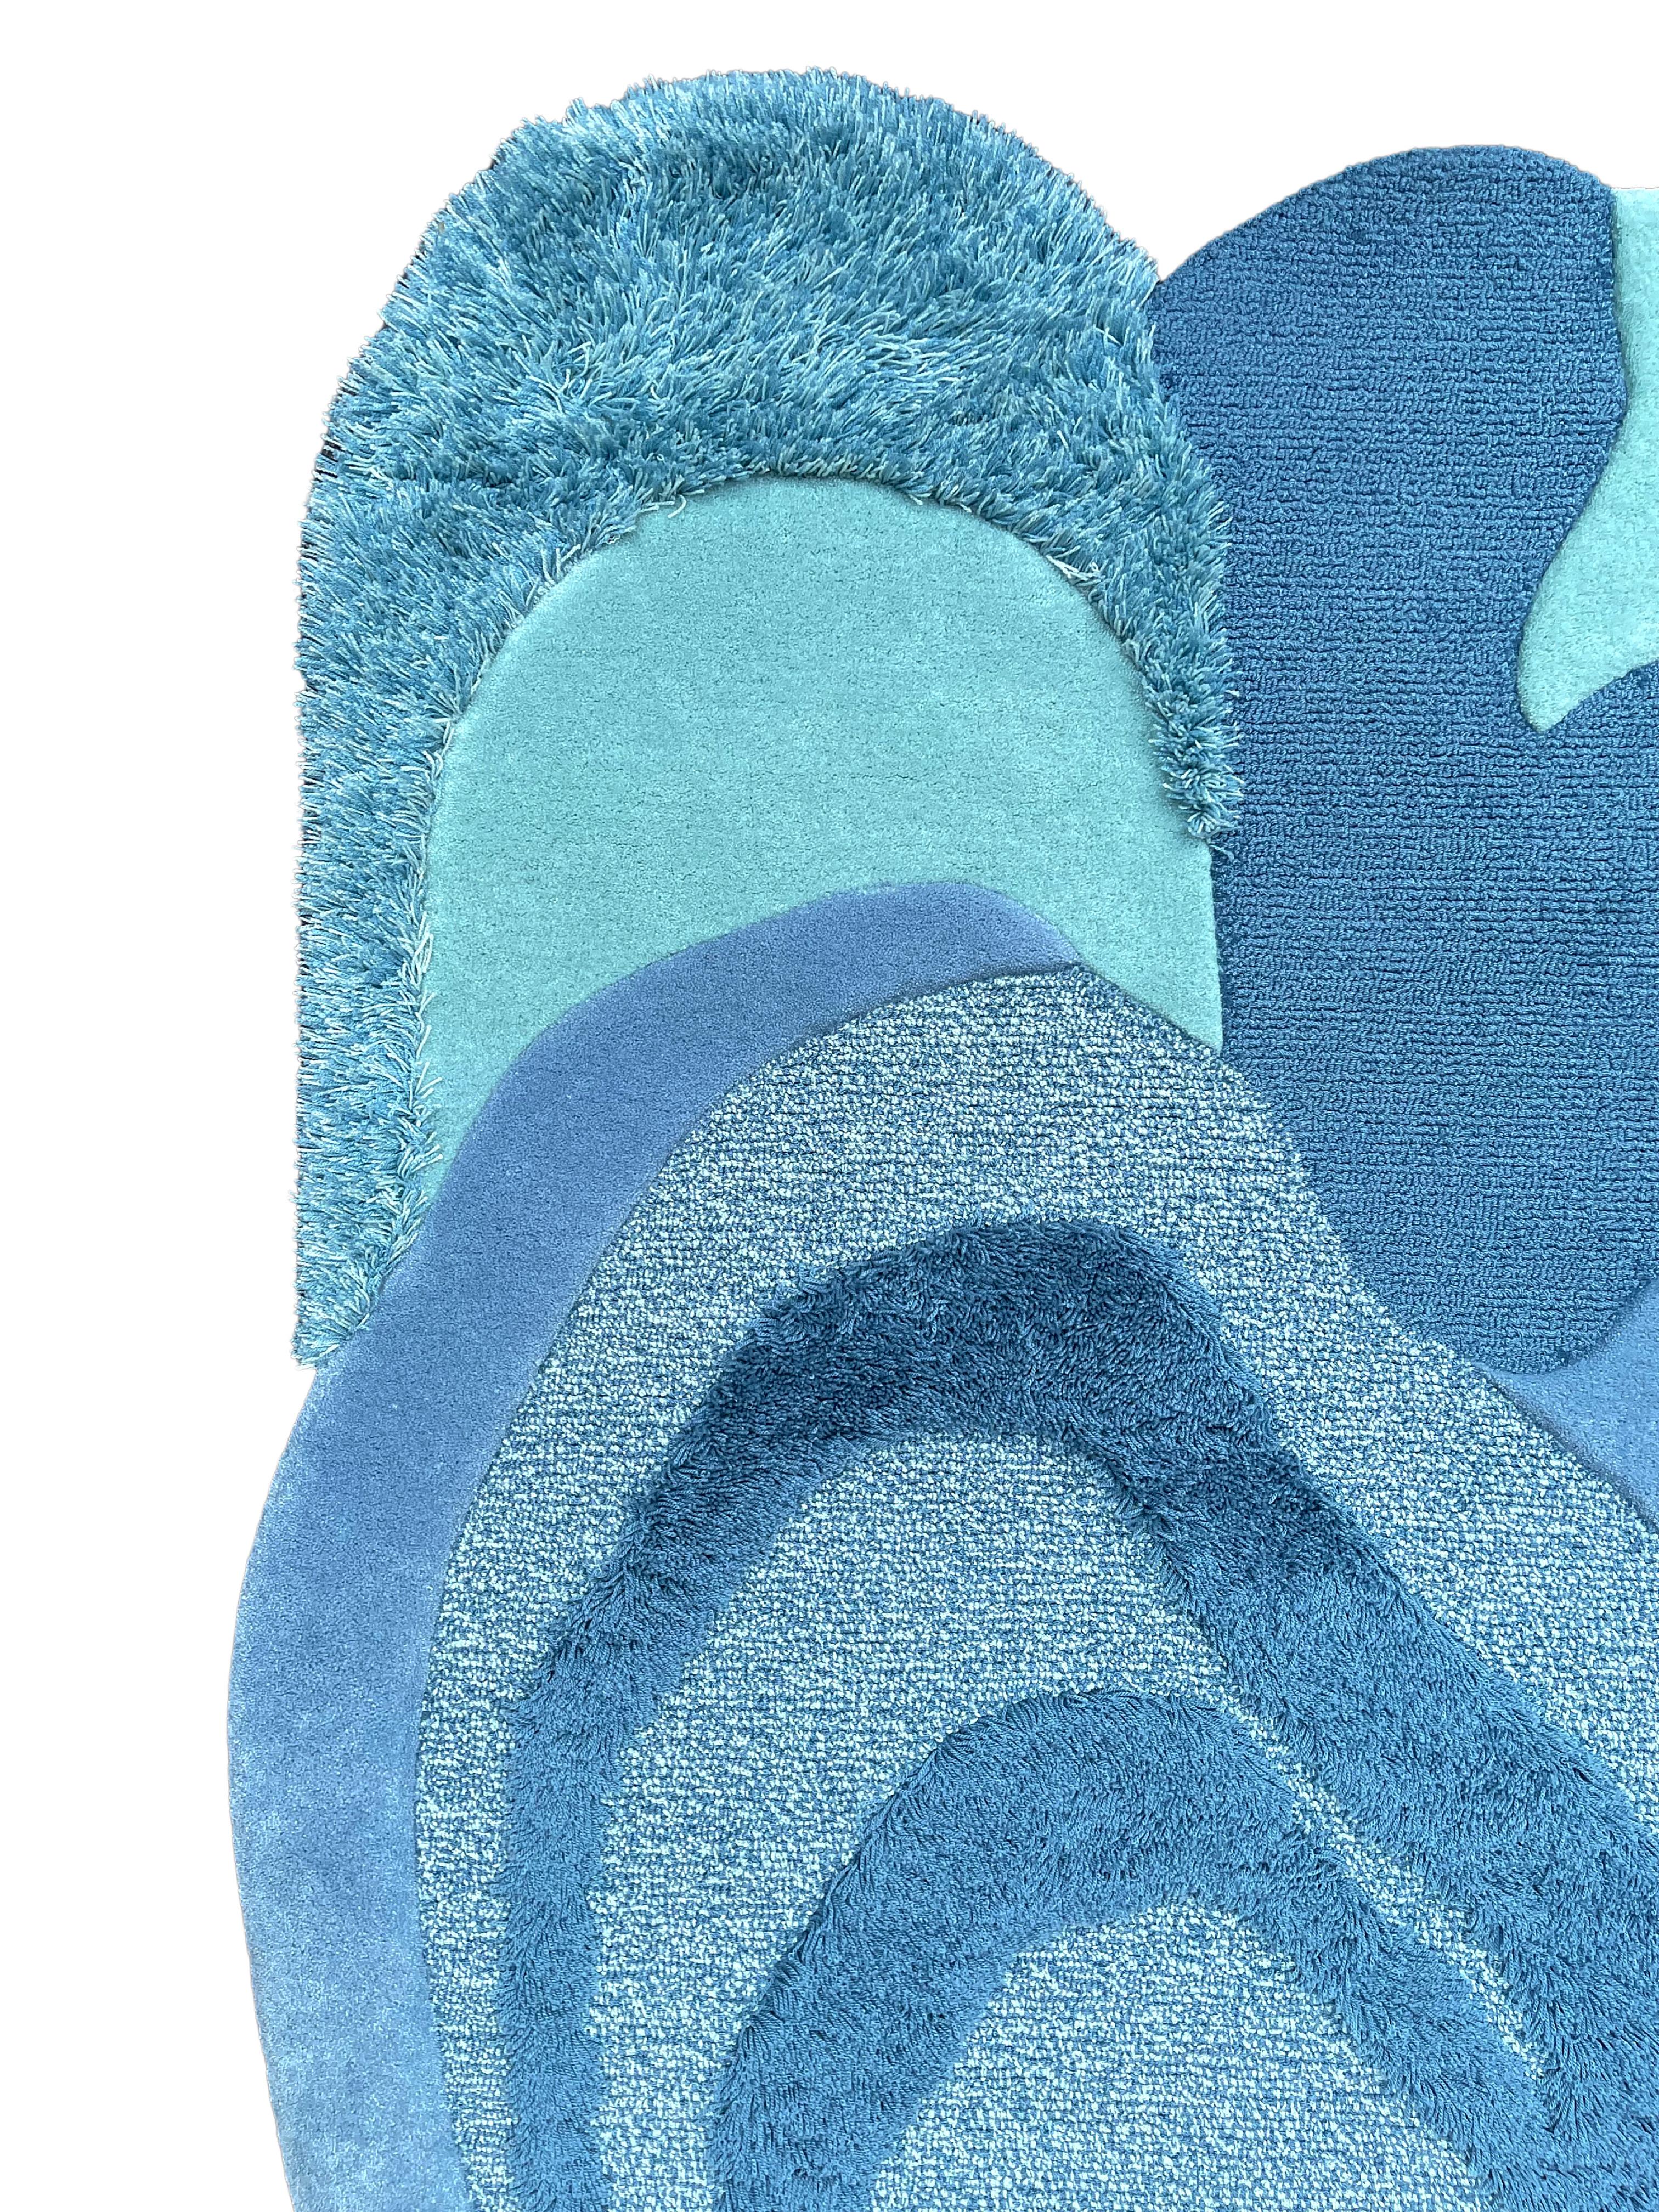 Tapis de style moderne en bleu par Rag Home

Un tapis inspiré des courants de l'océan et des Cumulonimbus ; sources d'eau - l'essence même de la vie. Reproduisez les sensations de l'eau qui coule et la tranquillité qui l'accompagne dans votre